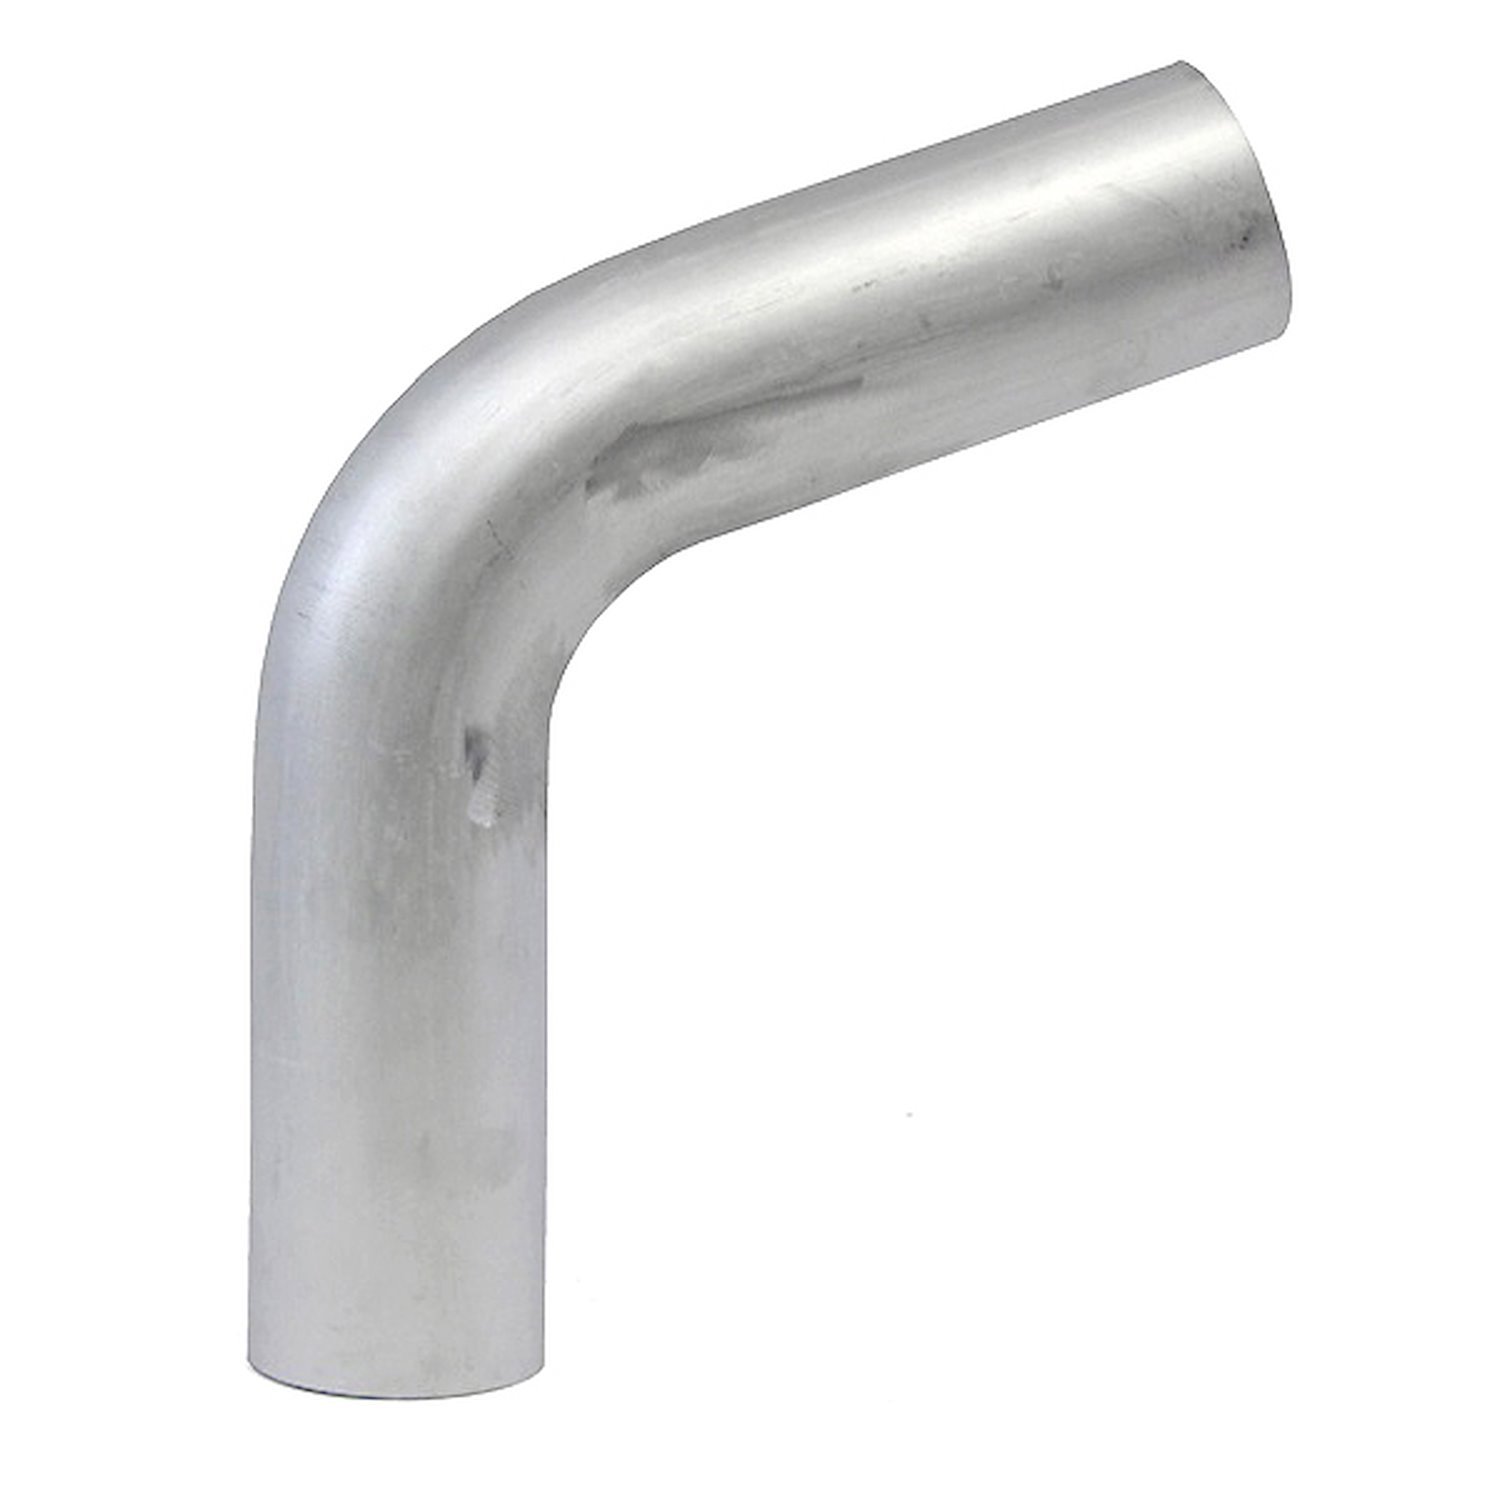 AT70-275-CLR-43 Aluminum Elbow Tube, 6061 Aluminum, 70-Degree Bend Elbow Tubing, 2-3/4 in. OD, Large Radius, 4-5/16 in. CLR